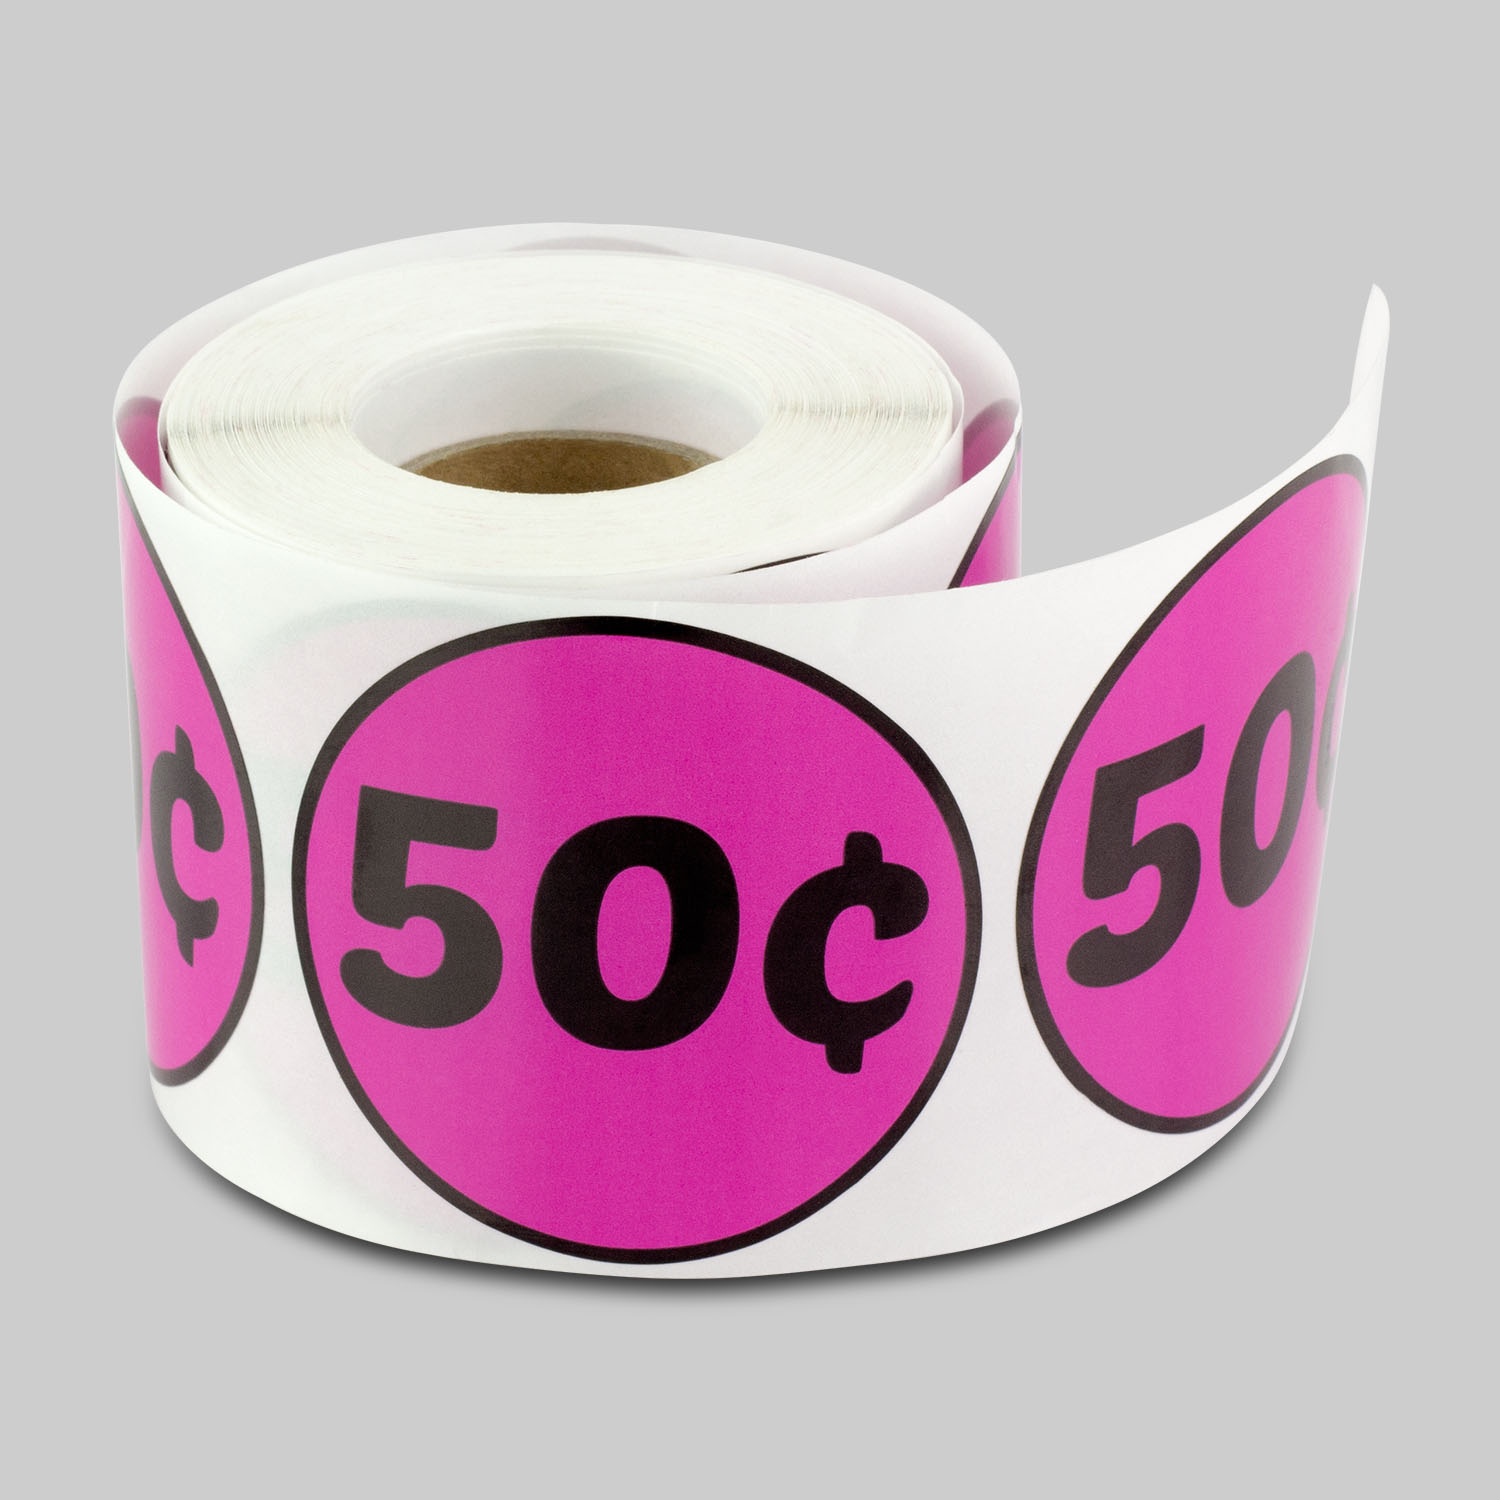 Round 50 Cent Stickers (2 inch, 300 Stickers per Roll, Dark Pink, 10 Rolls)  for Retail, Garage Sale or Yard Sales 